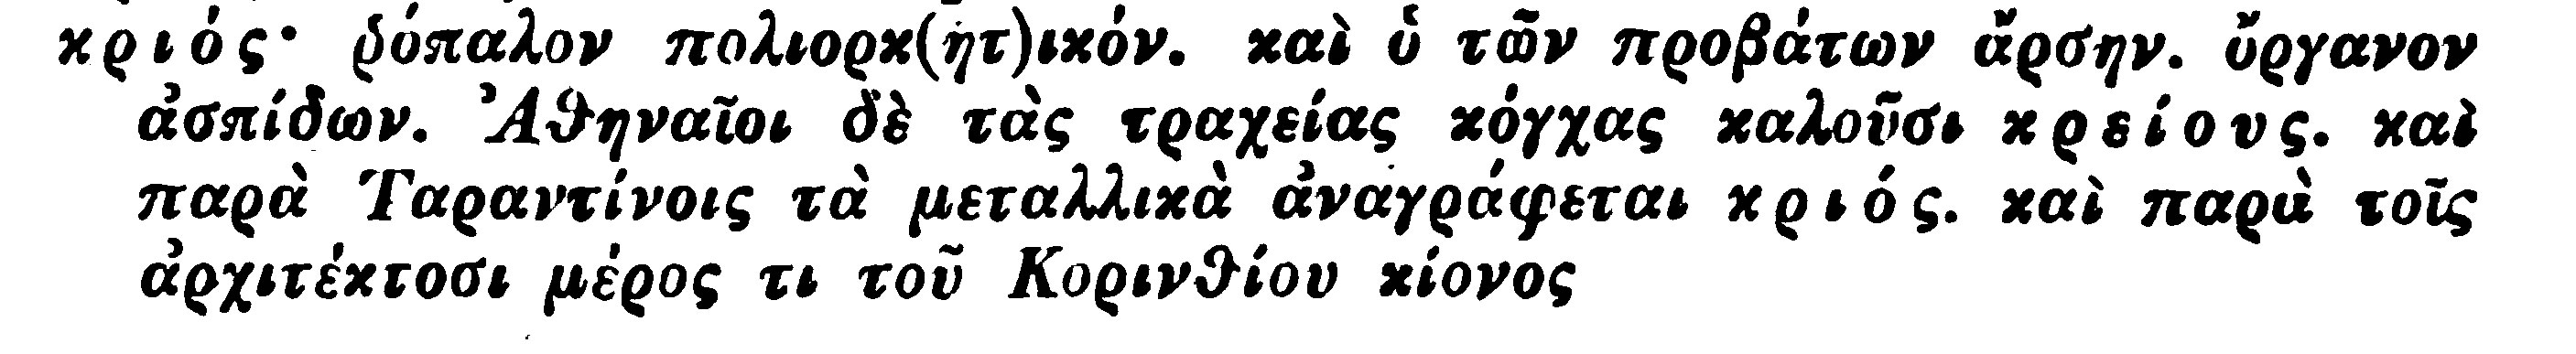 Ησύχιος σελ. 536 (538)